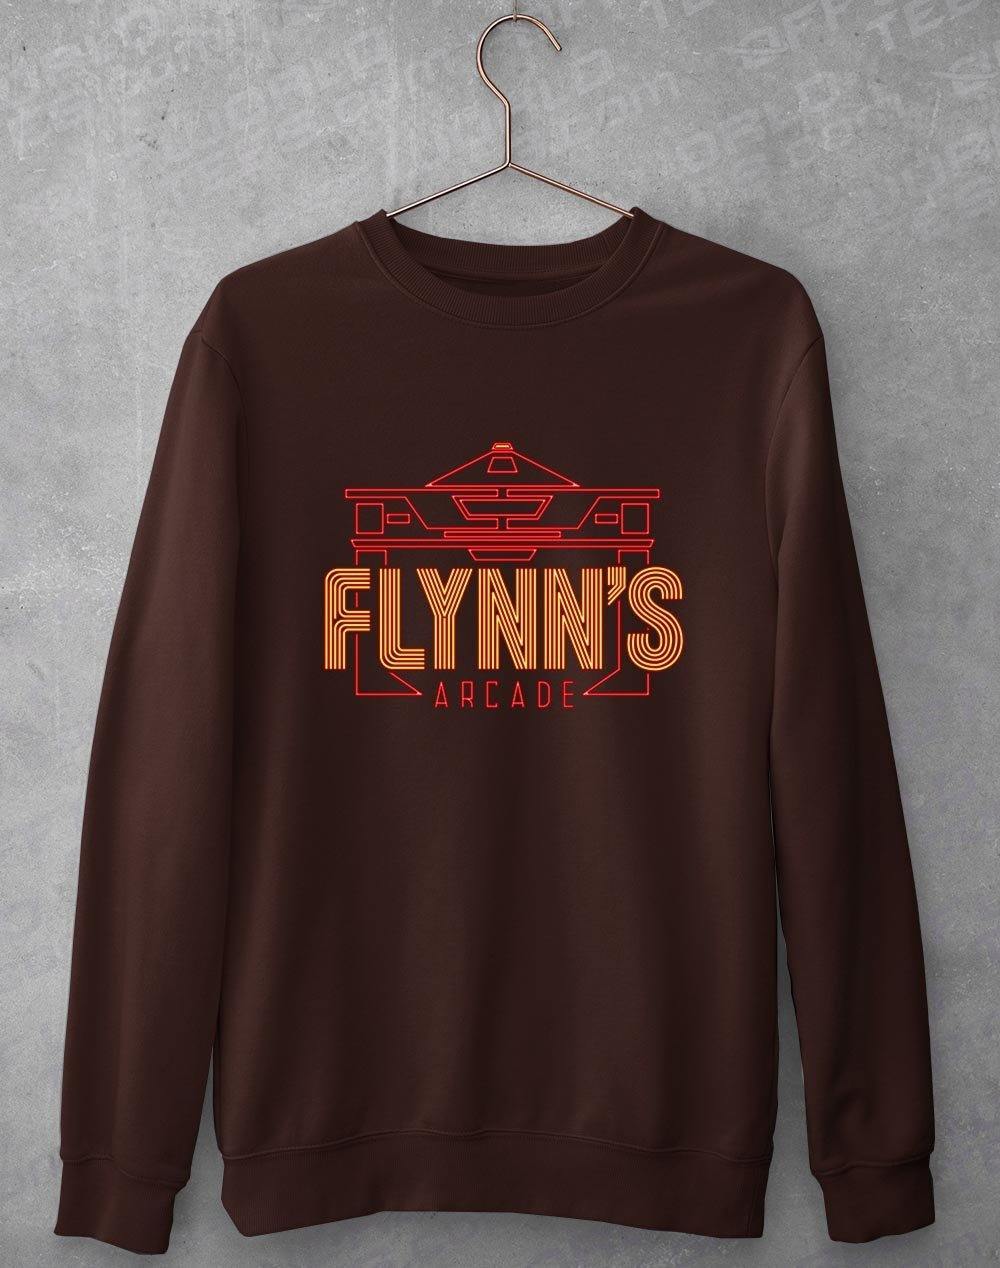 Flynns Arcade Sweatshirt S / Hot Chocolate  - Off World Tees